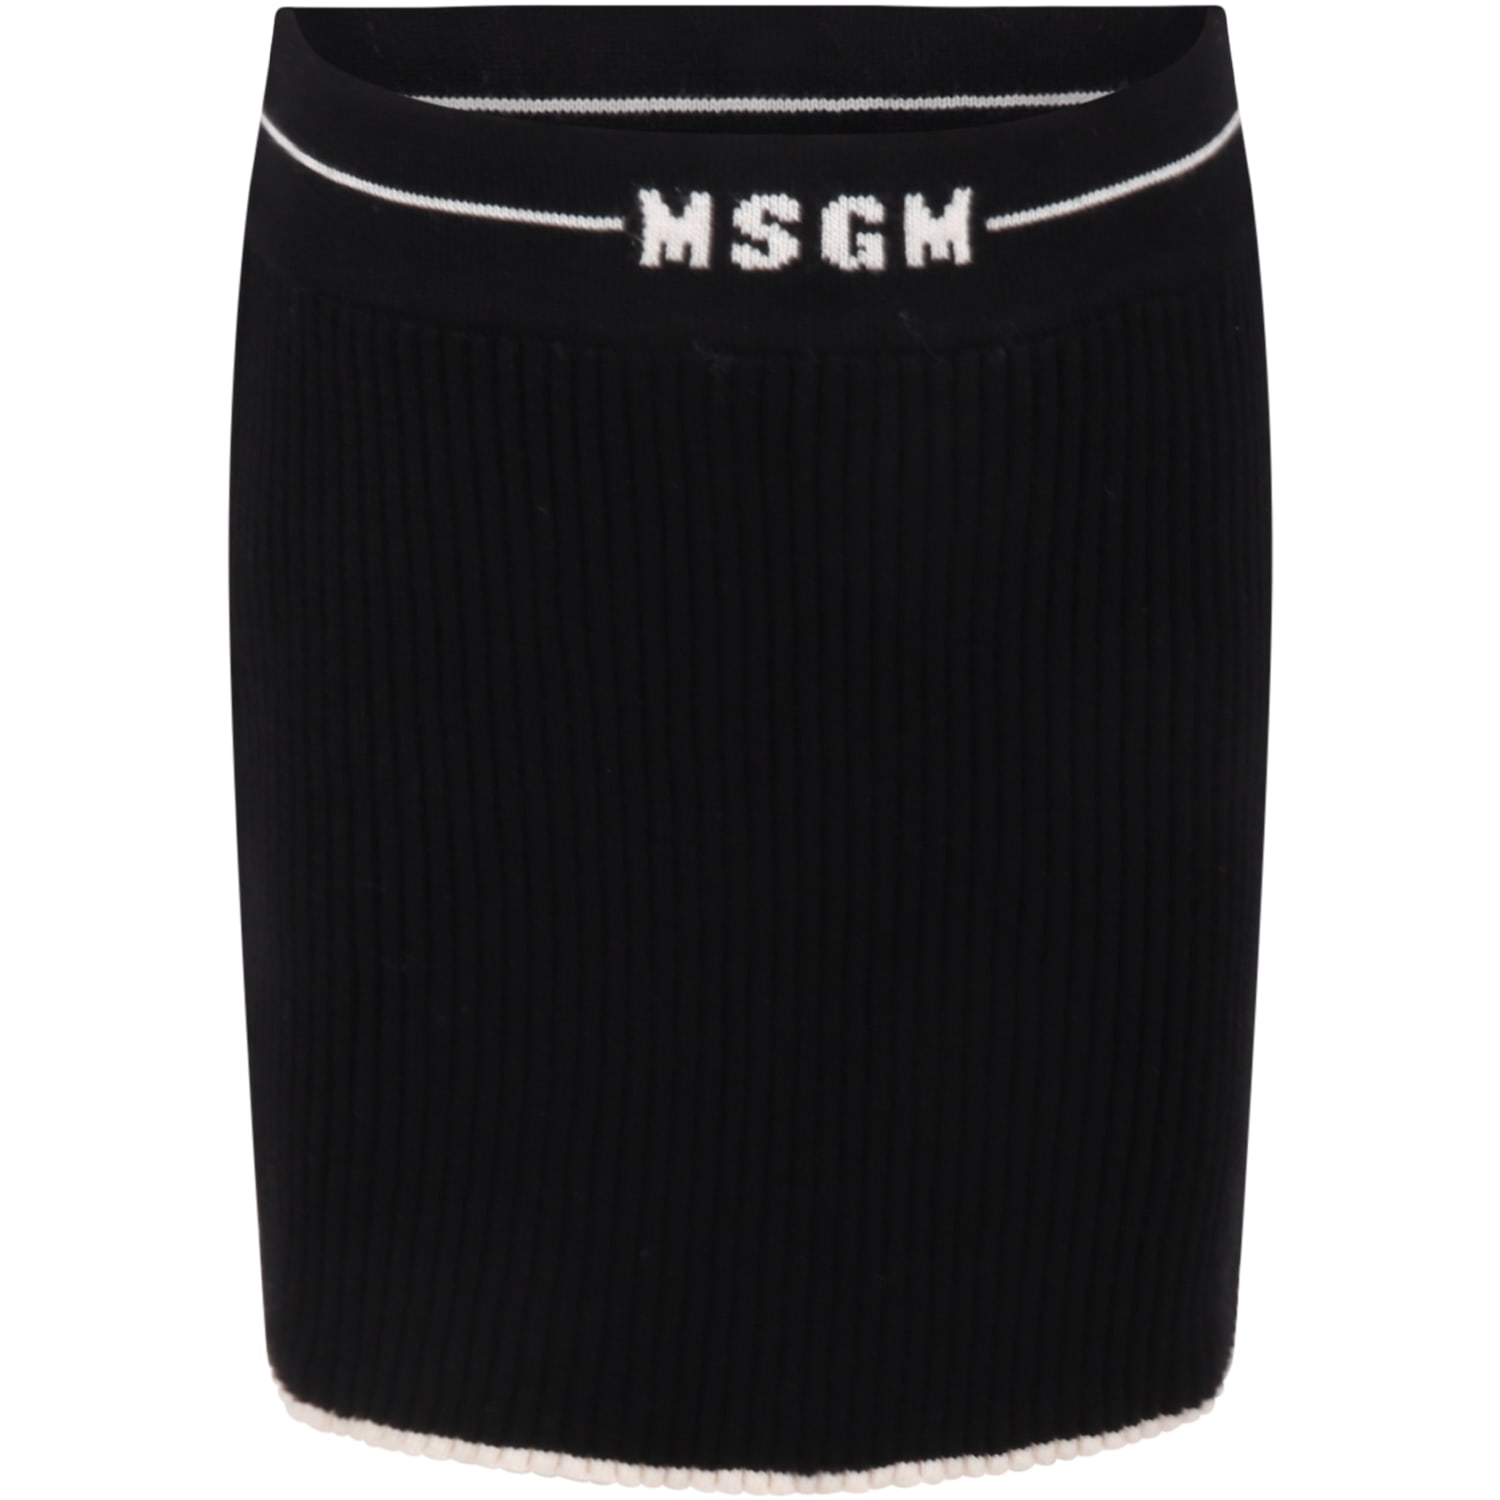 MSGM Black Skirt For Girl With Logos